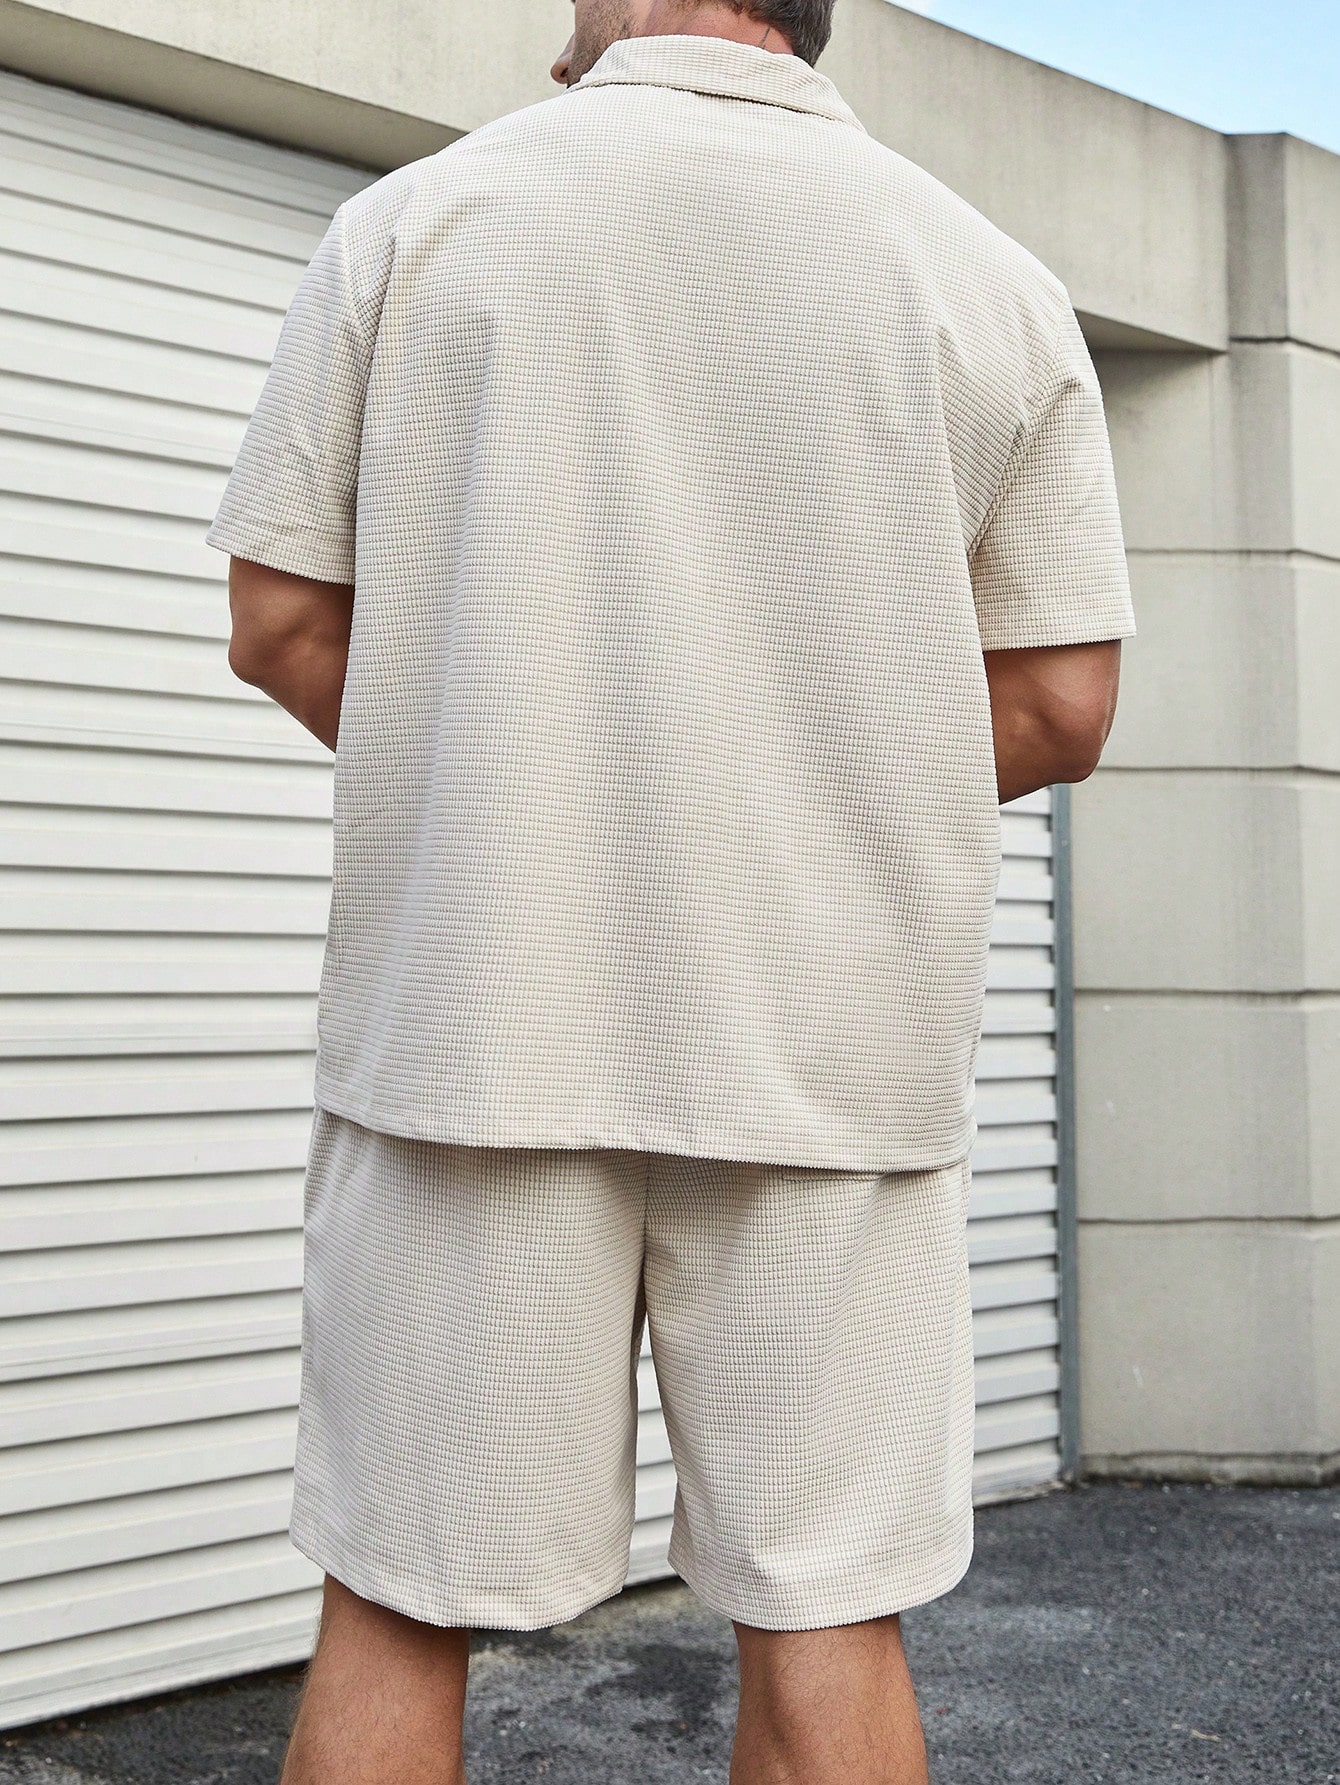 Мужская текстурированная рубашка-поло больших размеров Manfinity Homme, абрикос